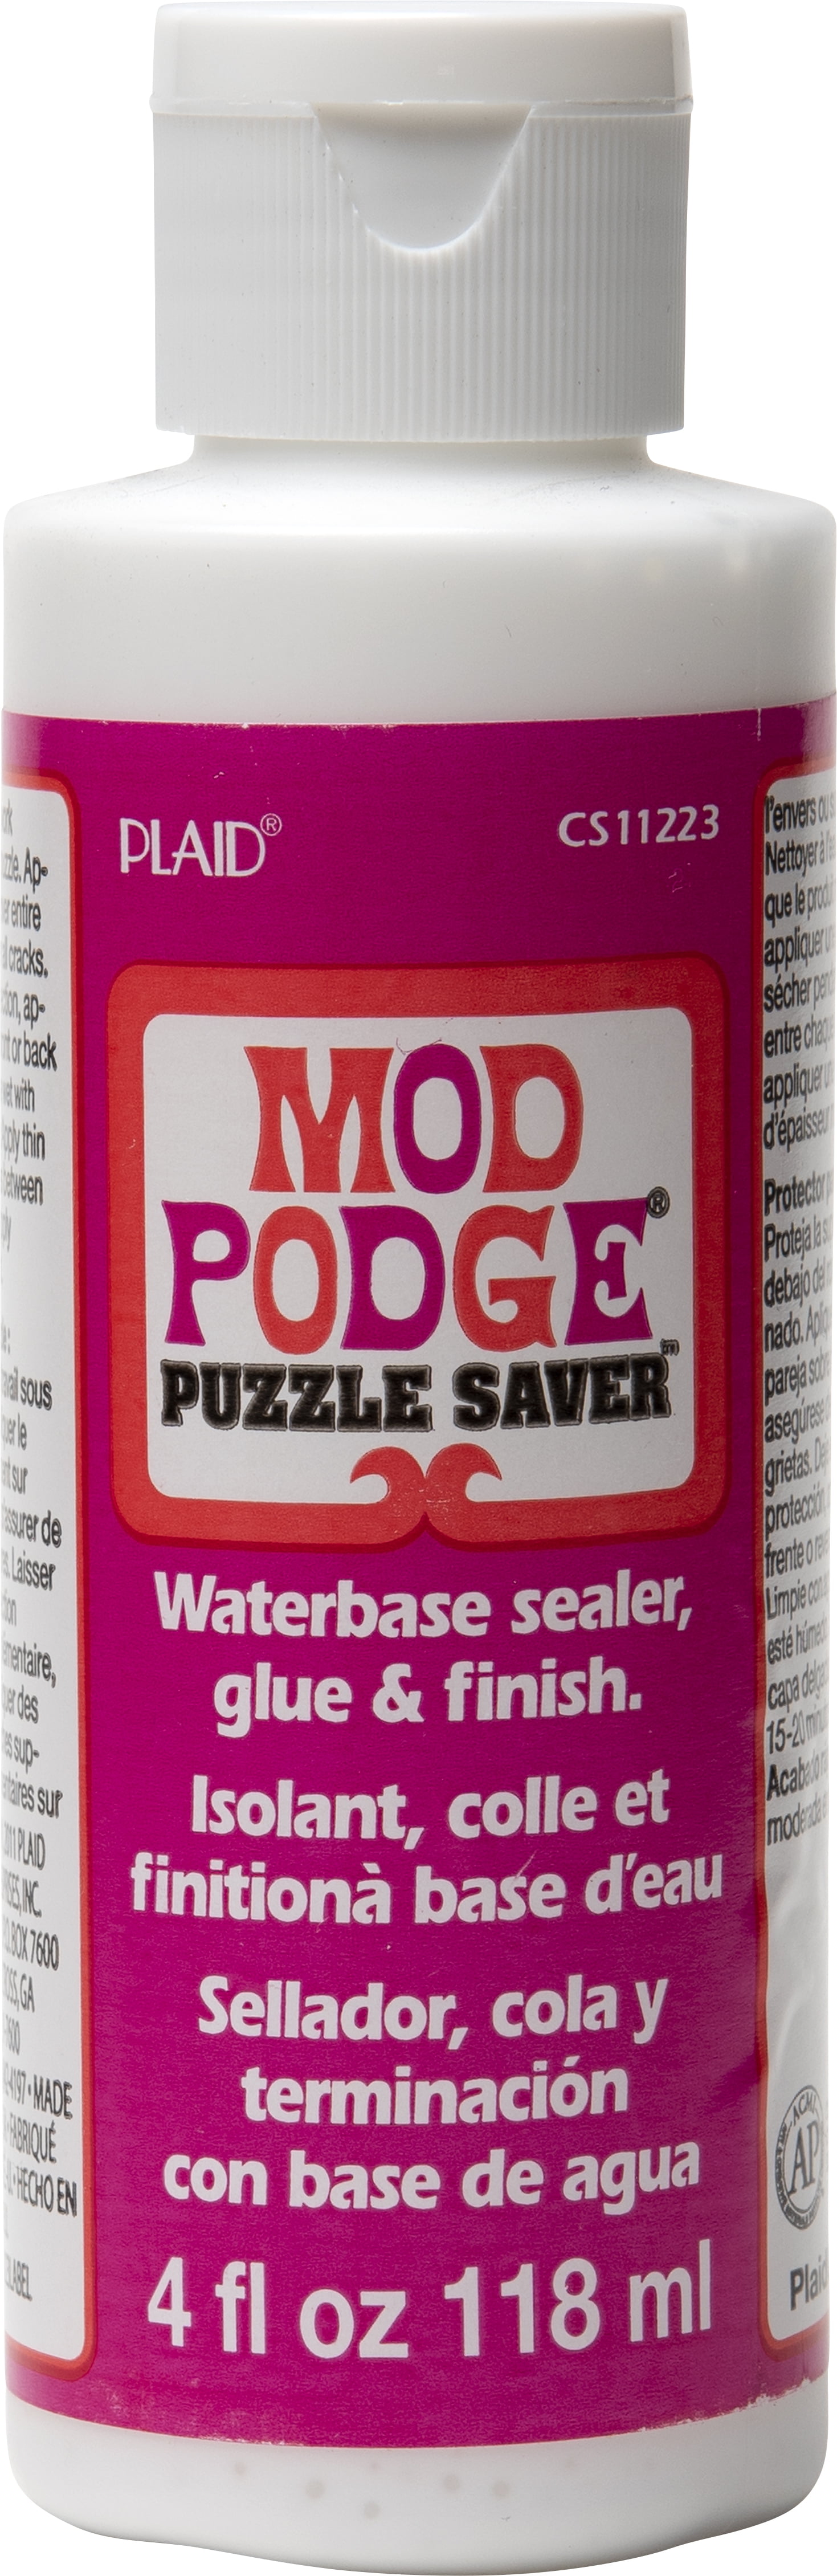 Mod Podge Puzzle Saver - 8 oz - New Bottle - Craft Glue/Sealer/Finish.  28995150685